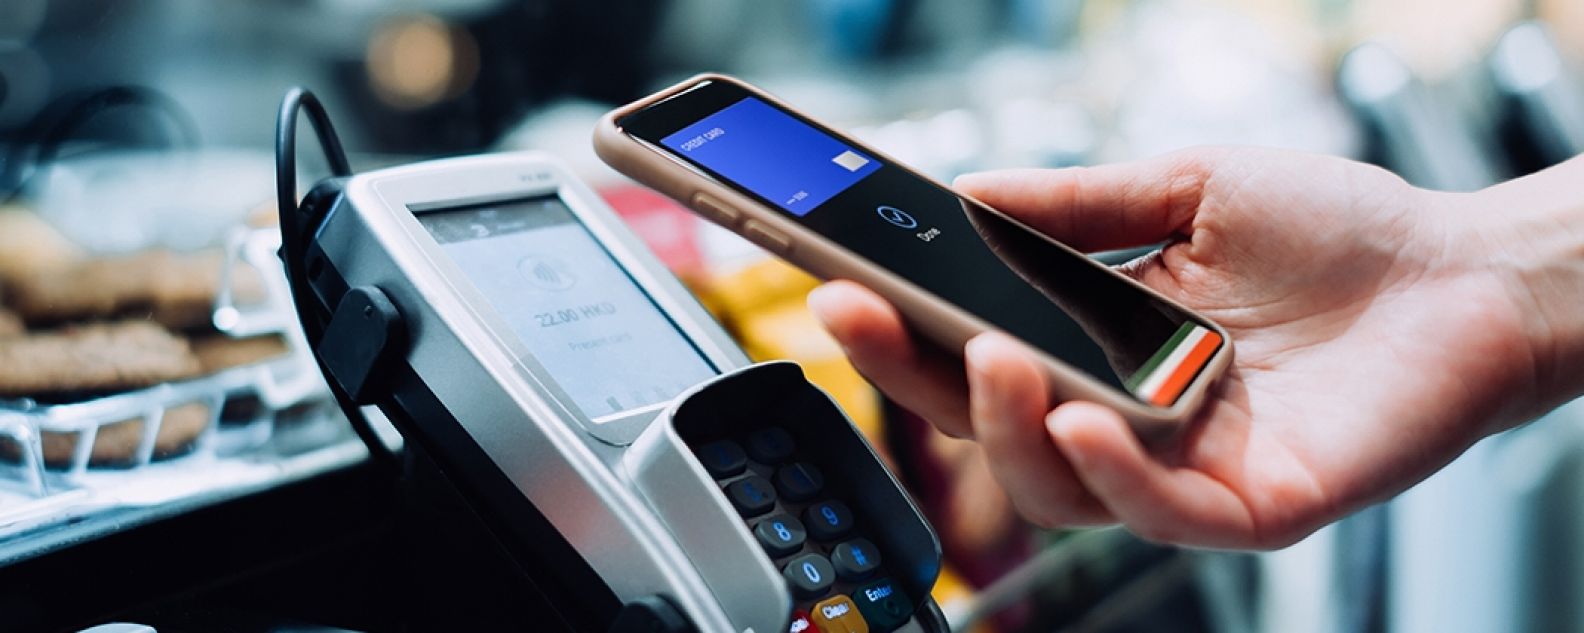 Propietario de tienda sonriente usando una tablet digital para procesar una transacción de tarjeta de crédito con un cliente